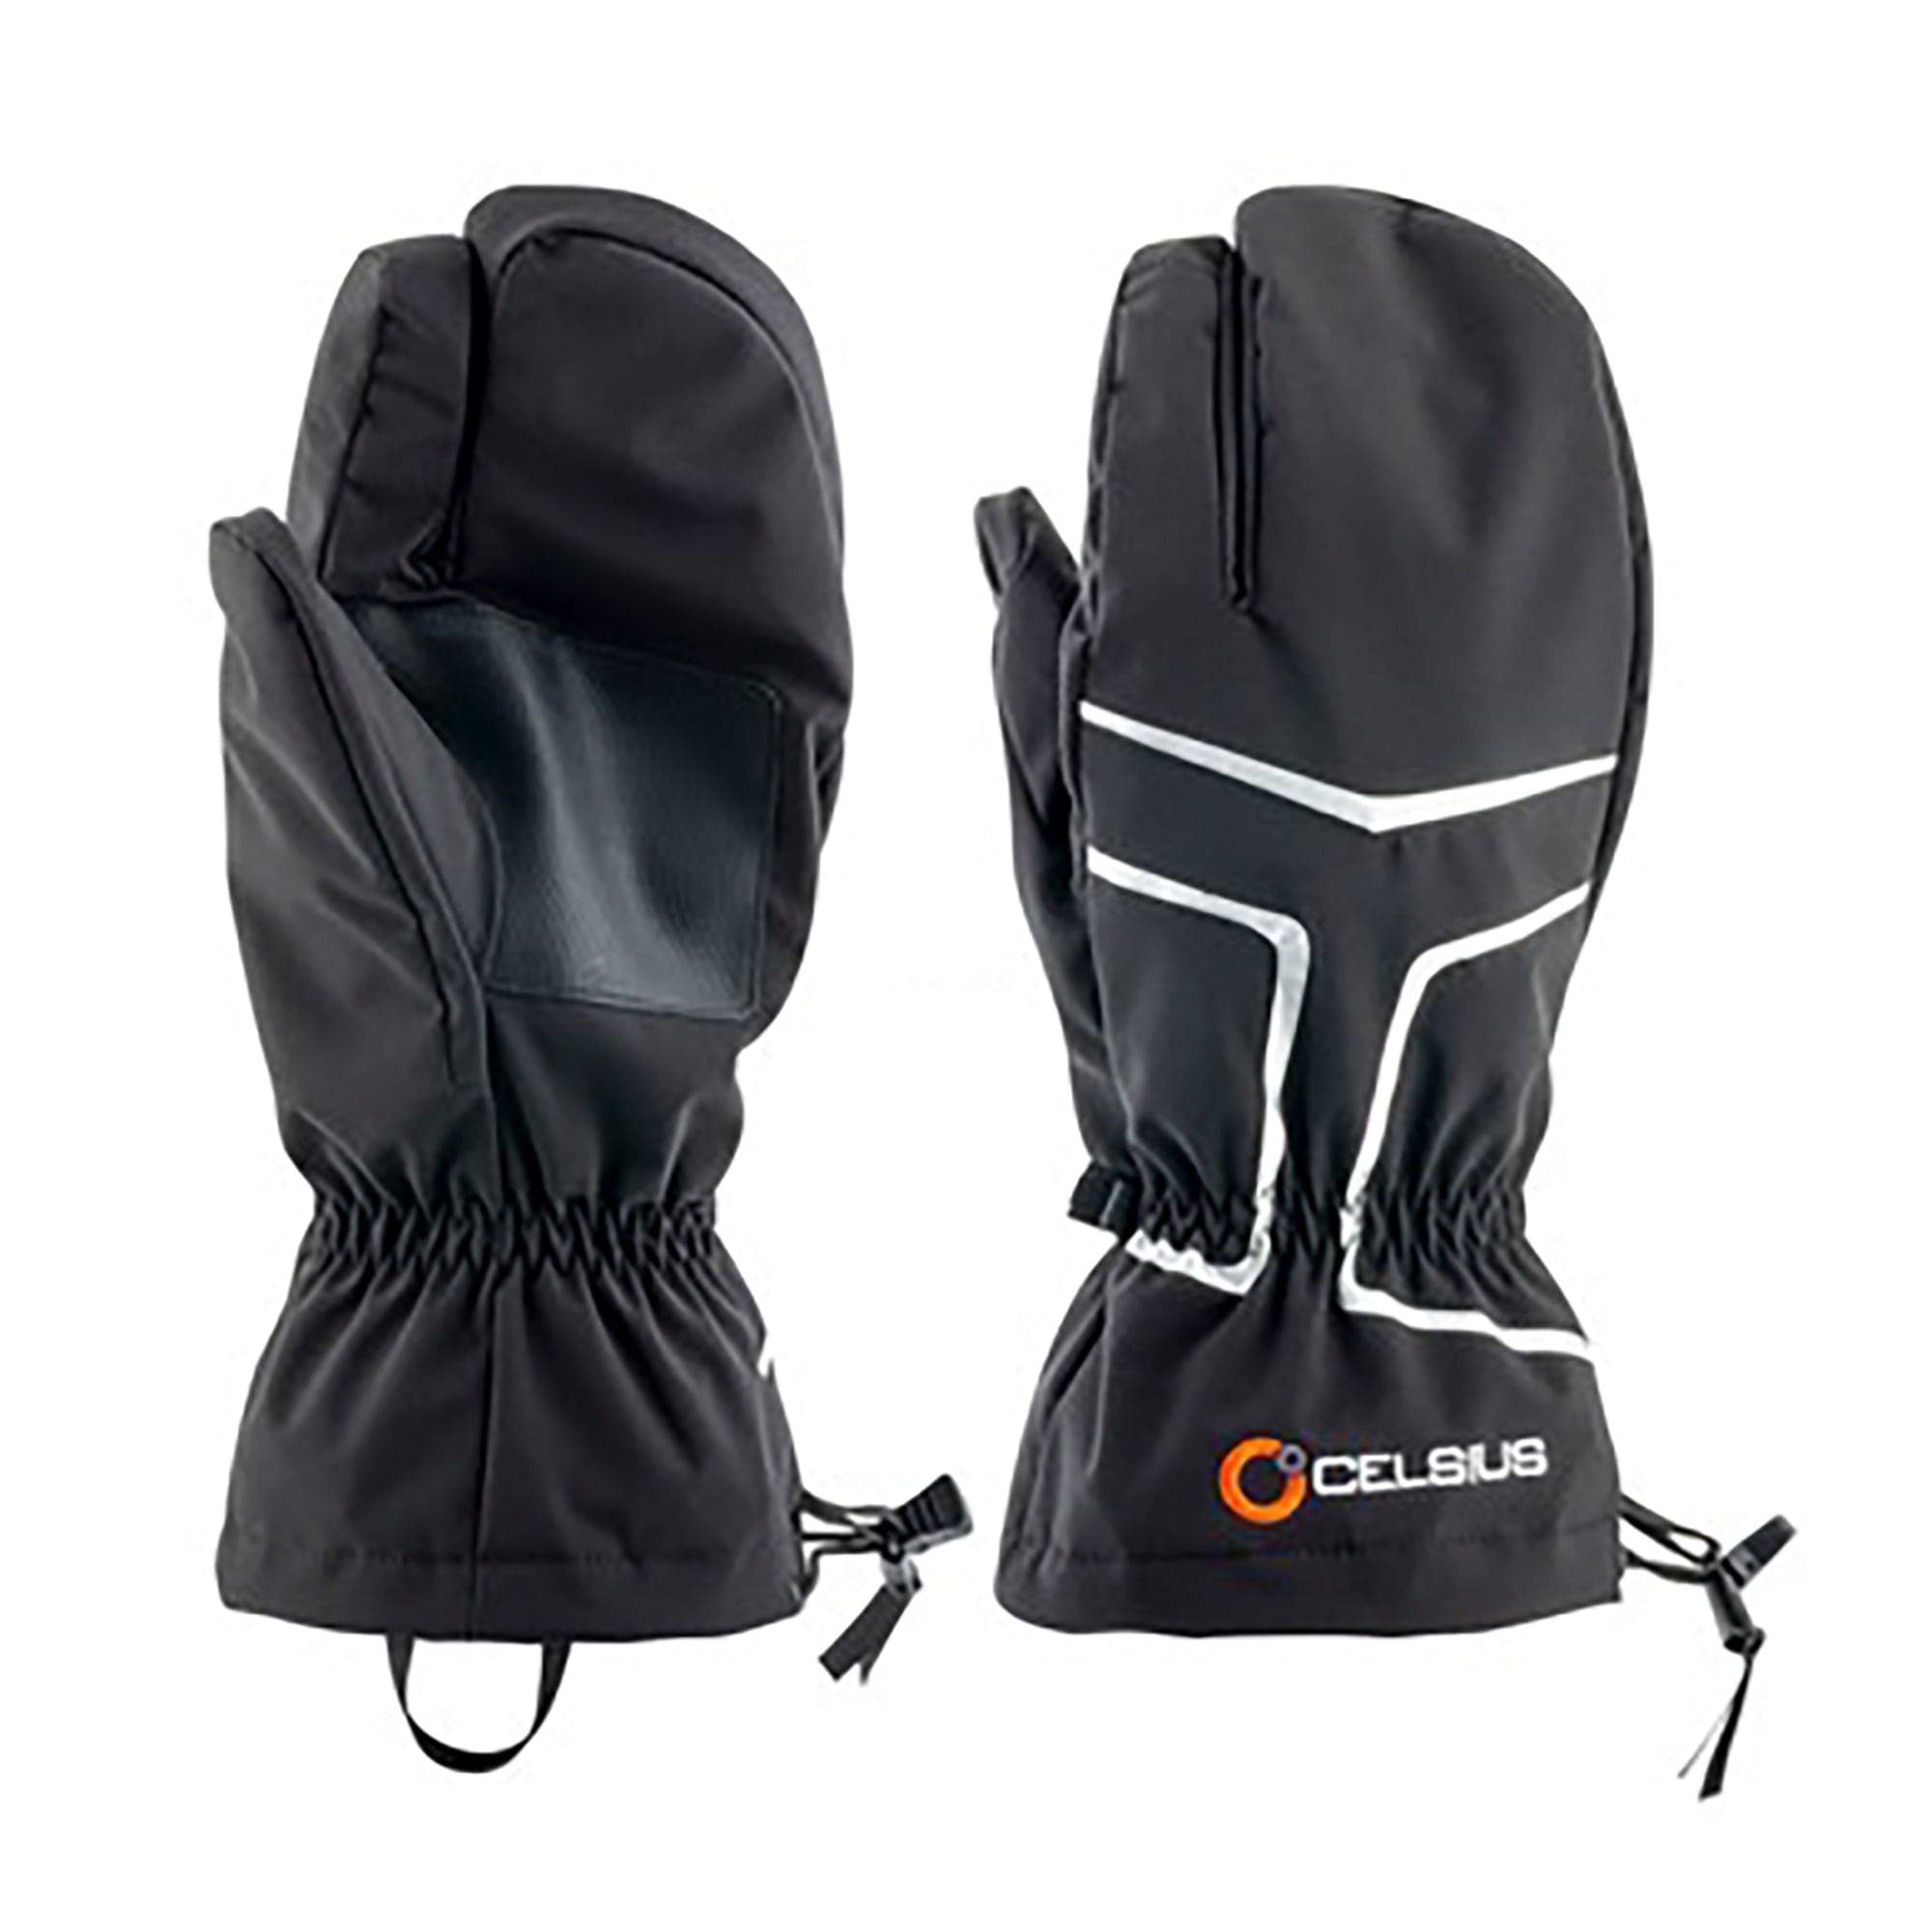 Celsius CEL-IGG-LG Ice Gauntlet Glove w/ Inner Removable Liner